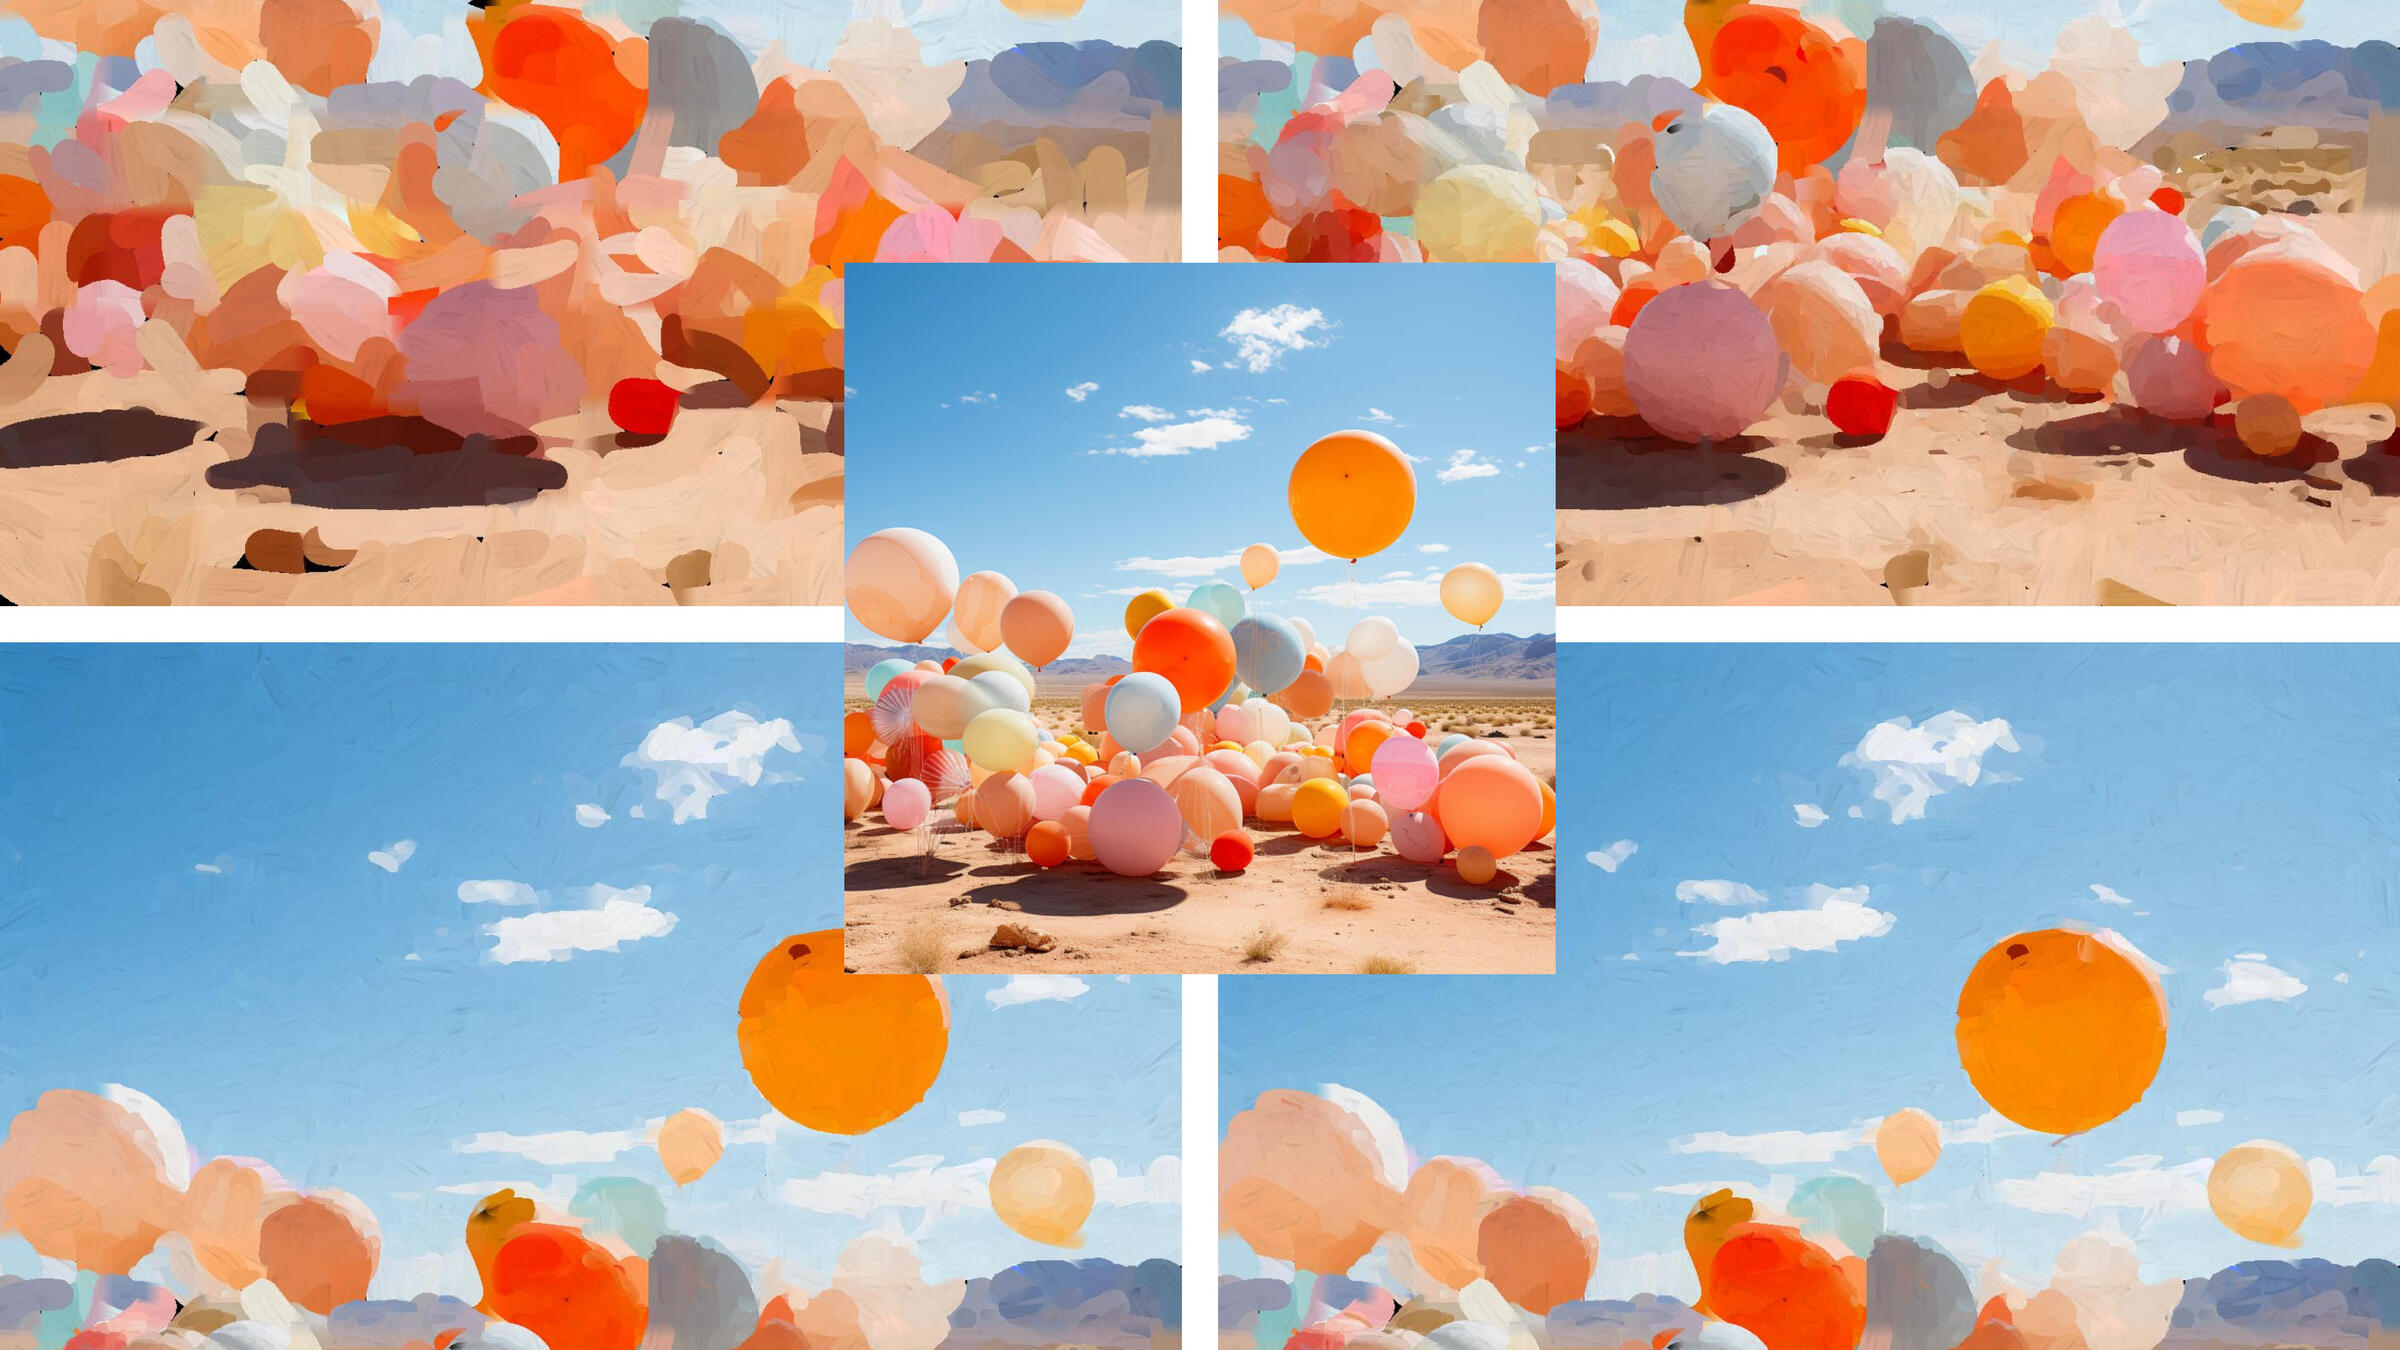 renderings of balloons